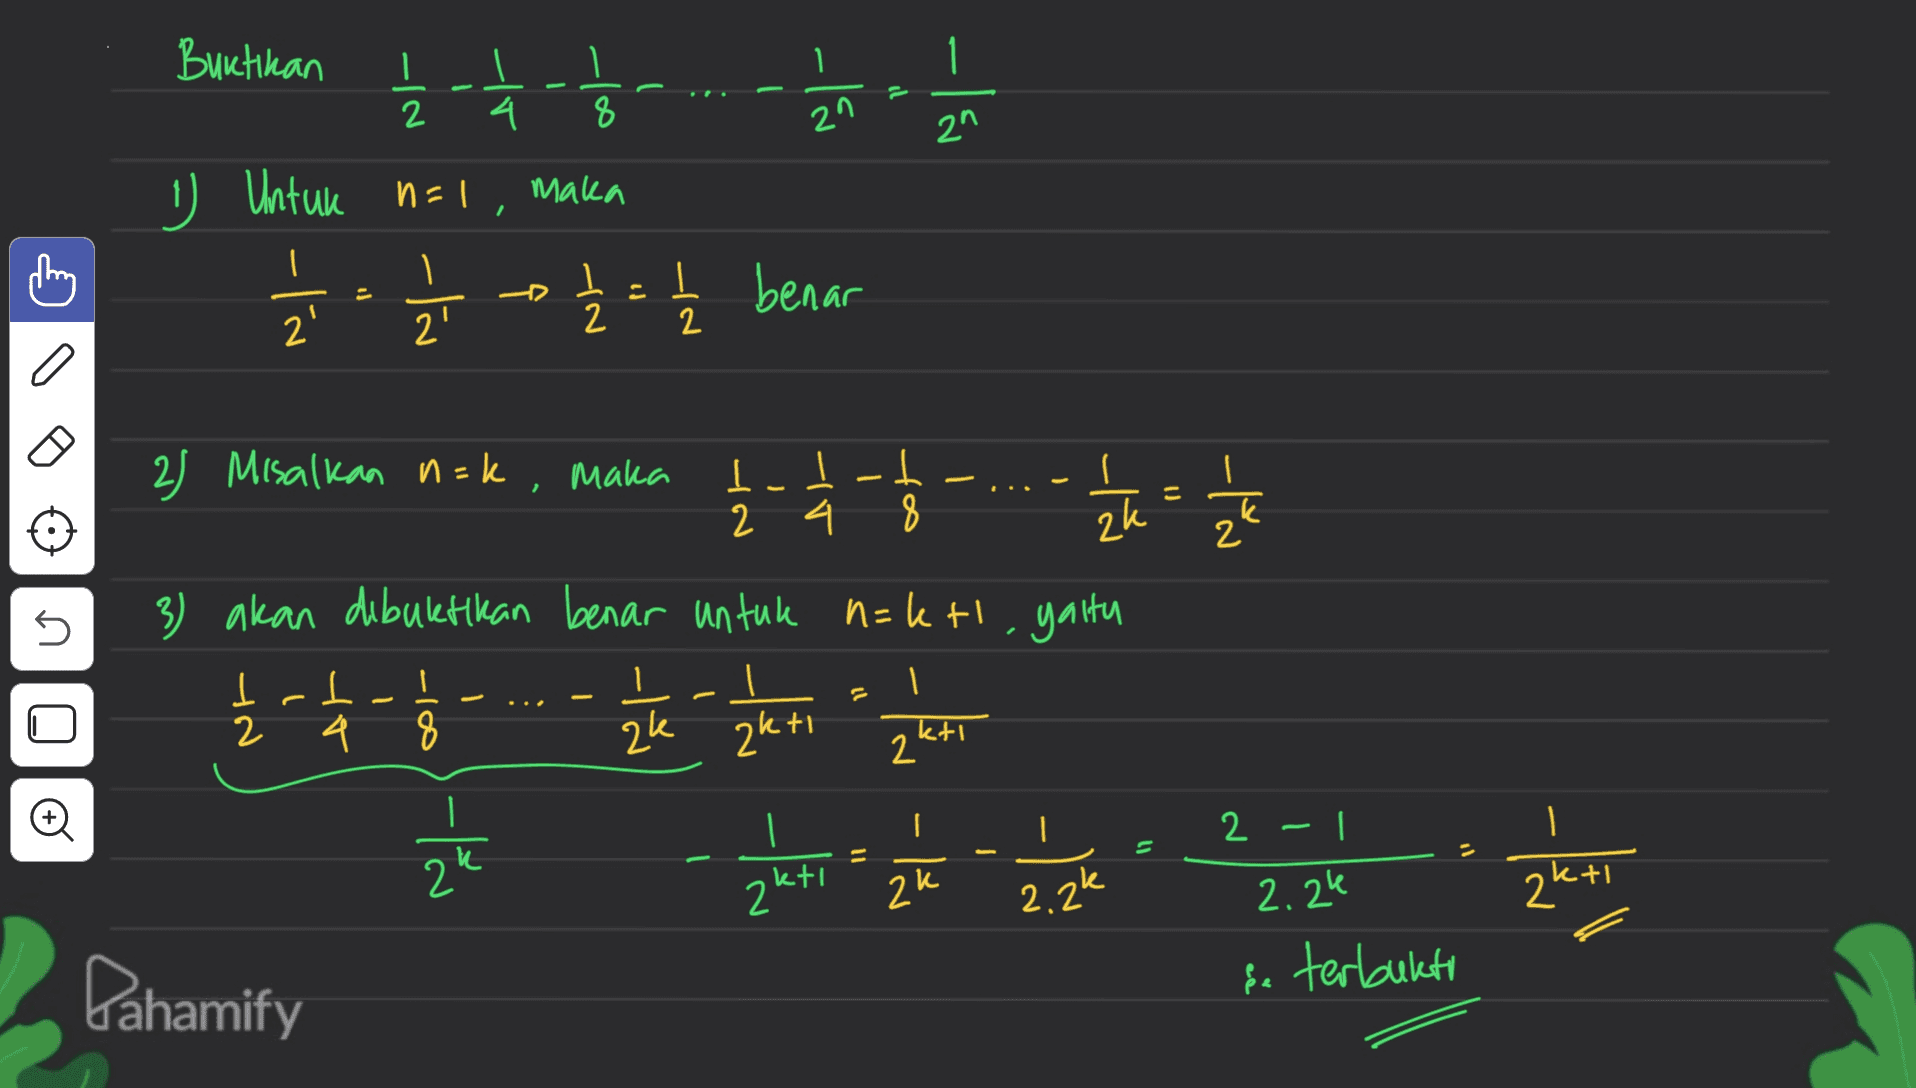 Buktikan -la 2 21 Ź - - - - 국ㅎ 1 Untuk ¿. 1 į 2 = 1 2 benar n=1, maka o k 2 2) Misalkan n=k, maka 1 - 2 2 - - - ... - h = 1 3) akan dibuktikan benar untuk n=ktl. yaitu 1 | ak akti s 12 I 2 ㅗ L 4 4 8 . ktı 2" . 2 - -tů 2 z ktı zu 2.2k 2.24 2k+1 Pahamify se terbukti 